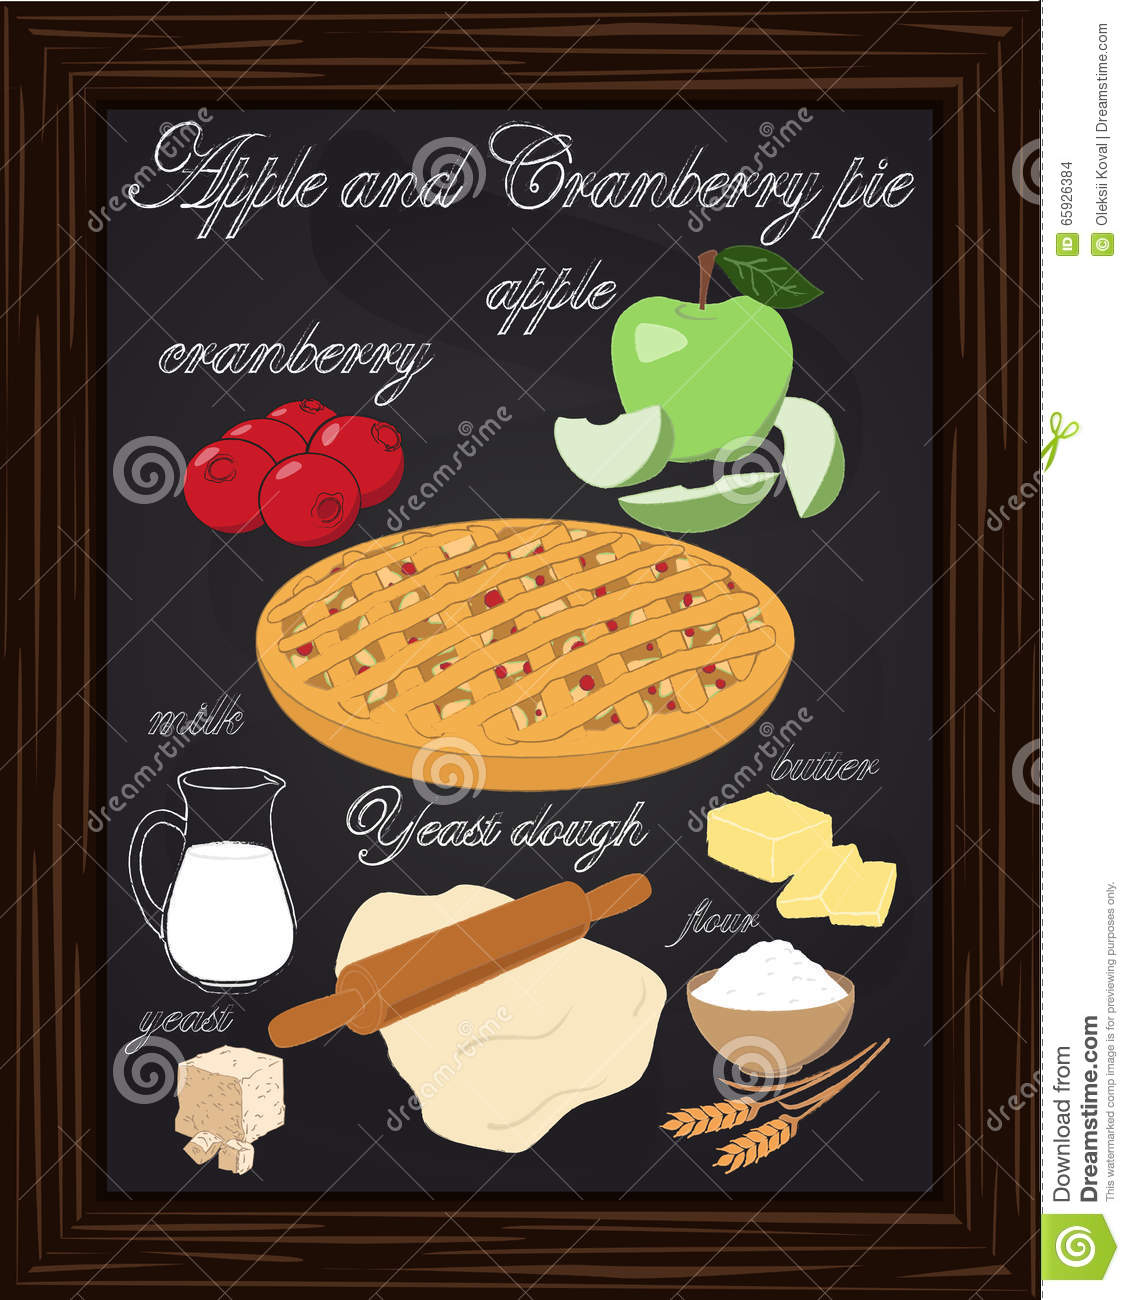 Apple Cranberry Pie With Apple Cranberry Dough Flour Butter Milk